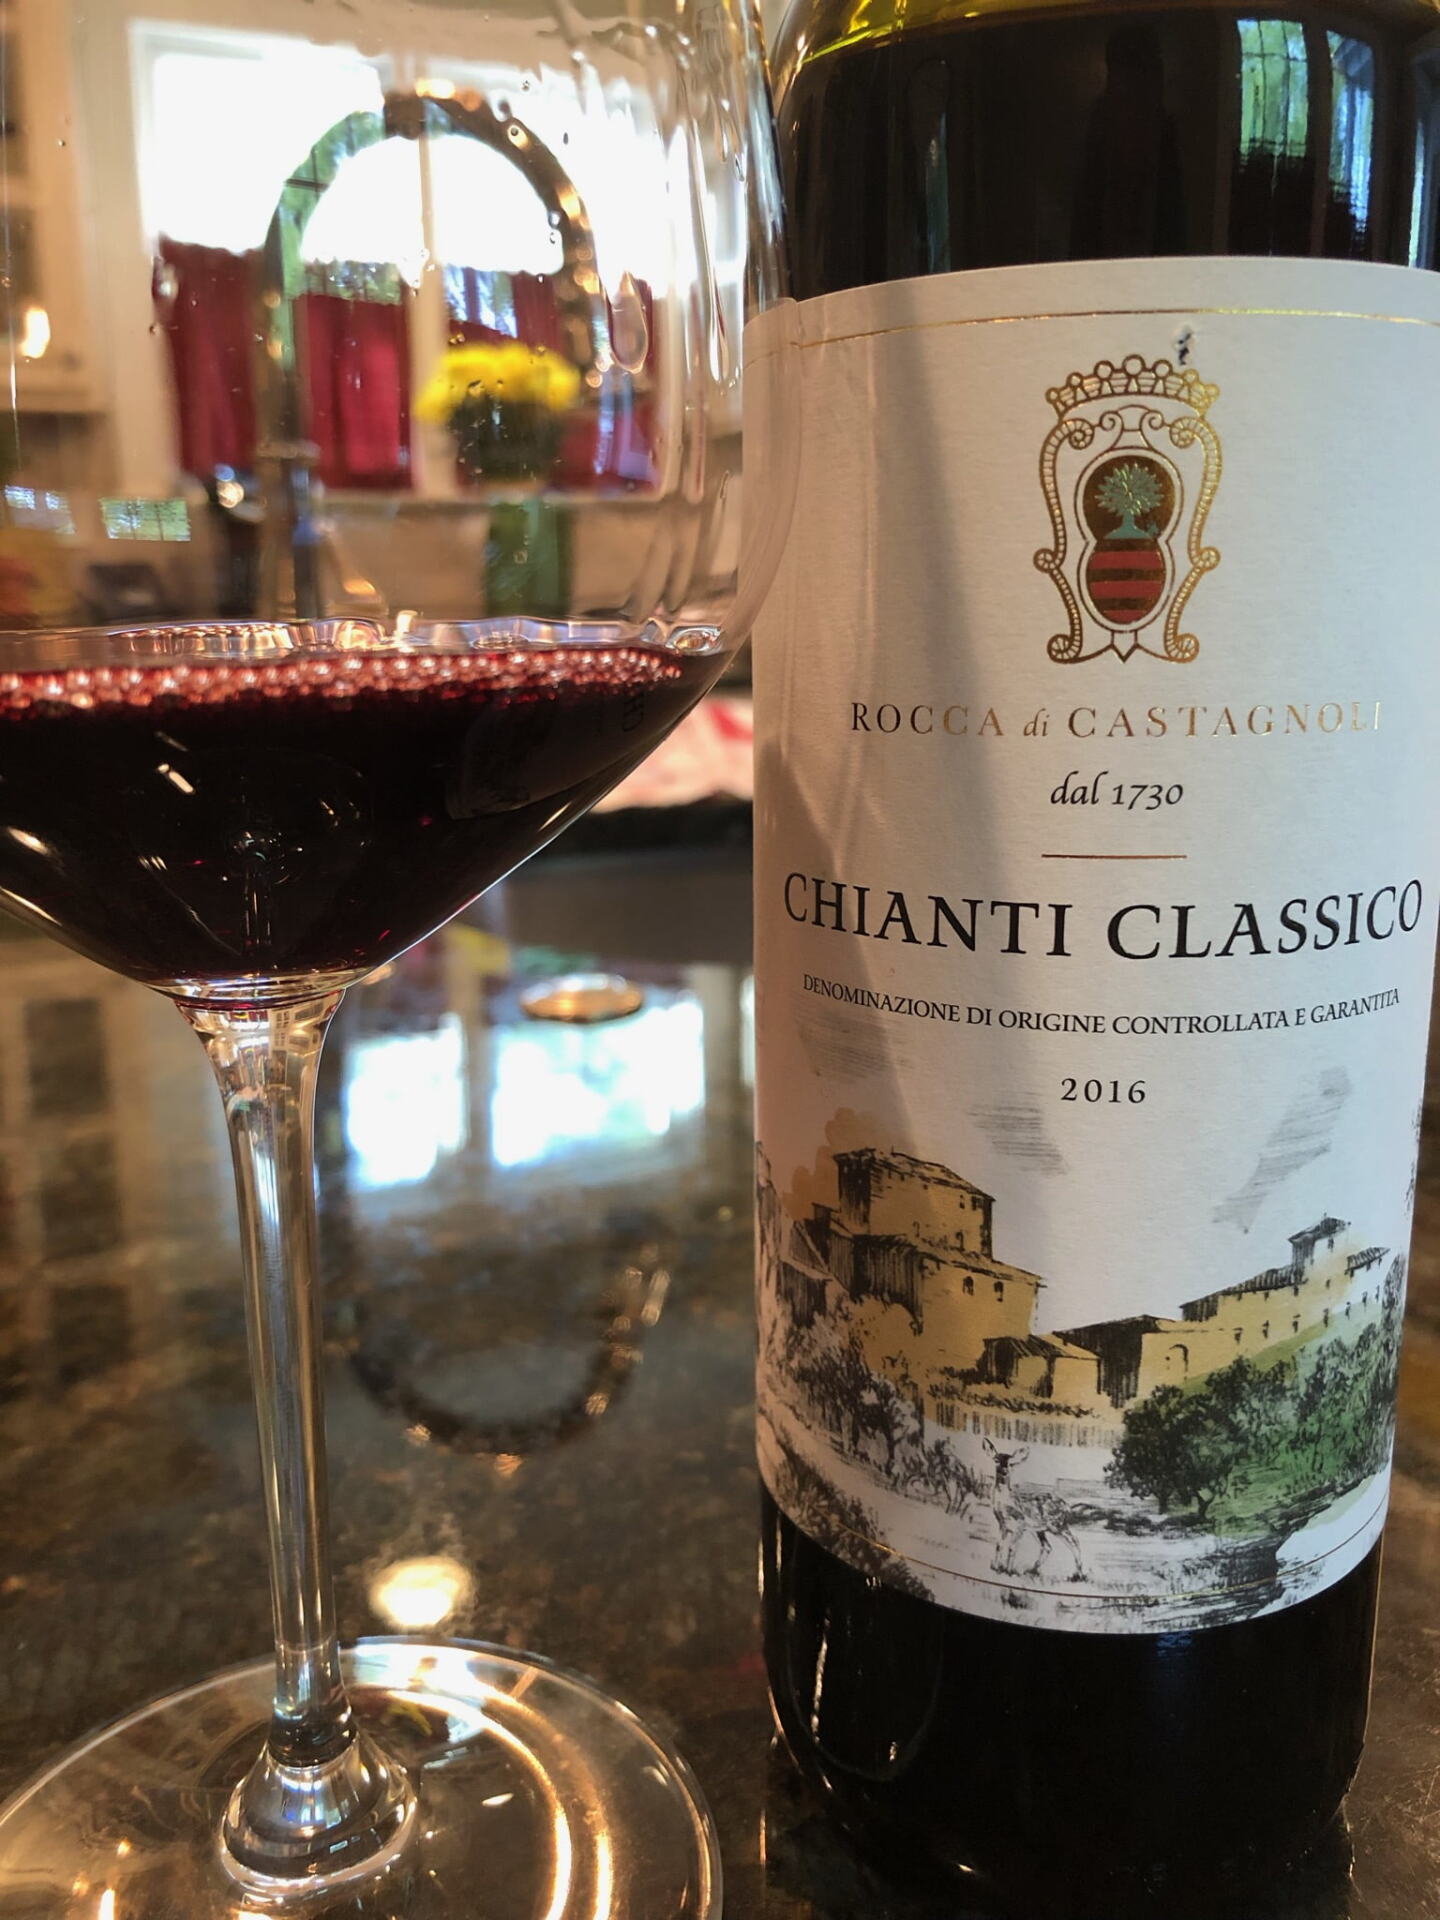 Bottle of Chianti Classico wine